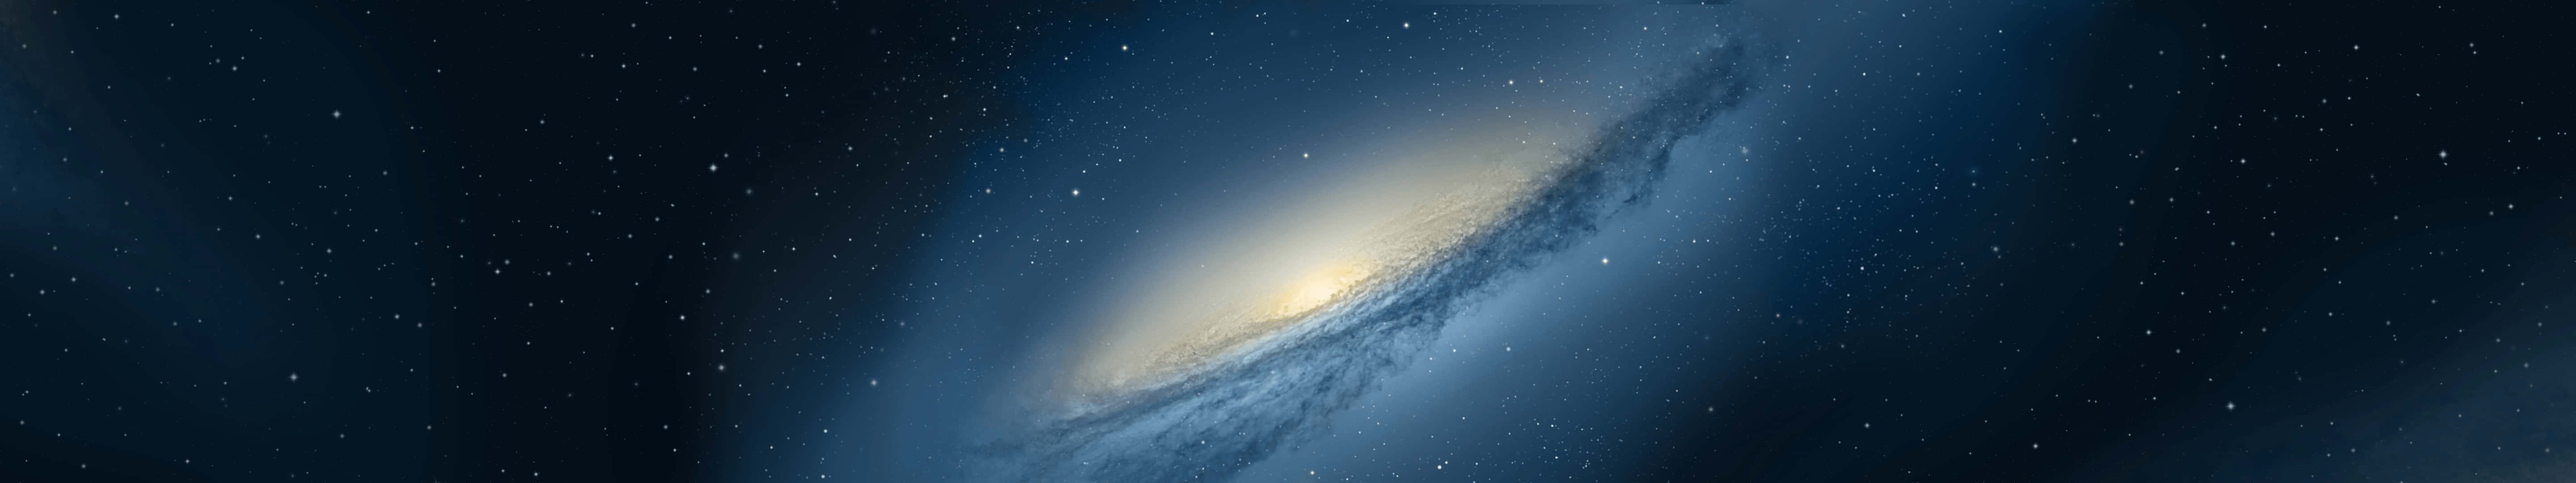 Galaxyhintergrundbilder - Galaxy Hintergrundbilder Wallpaper